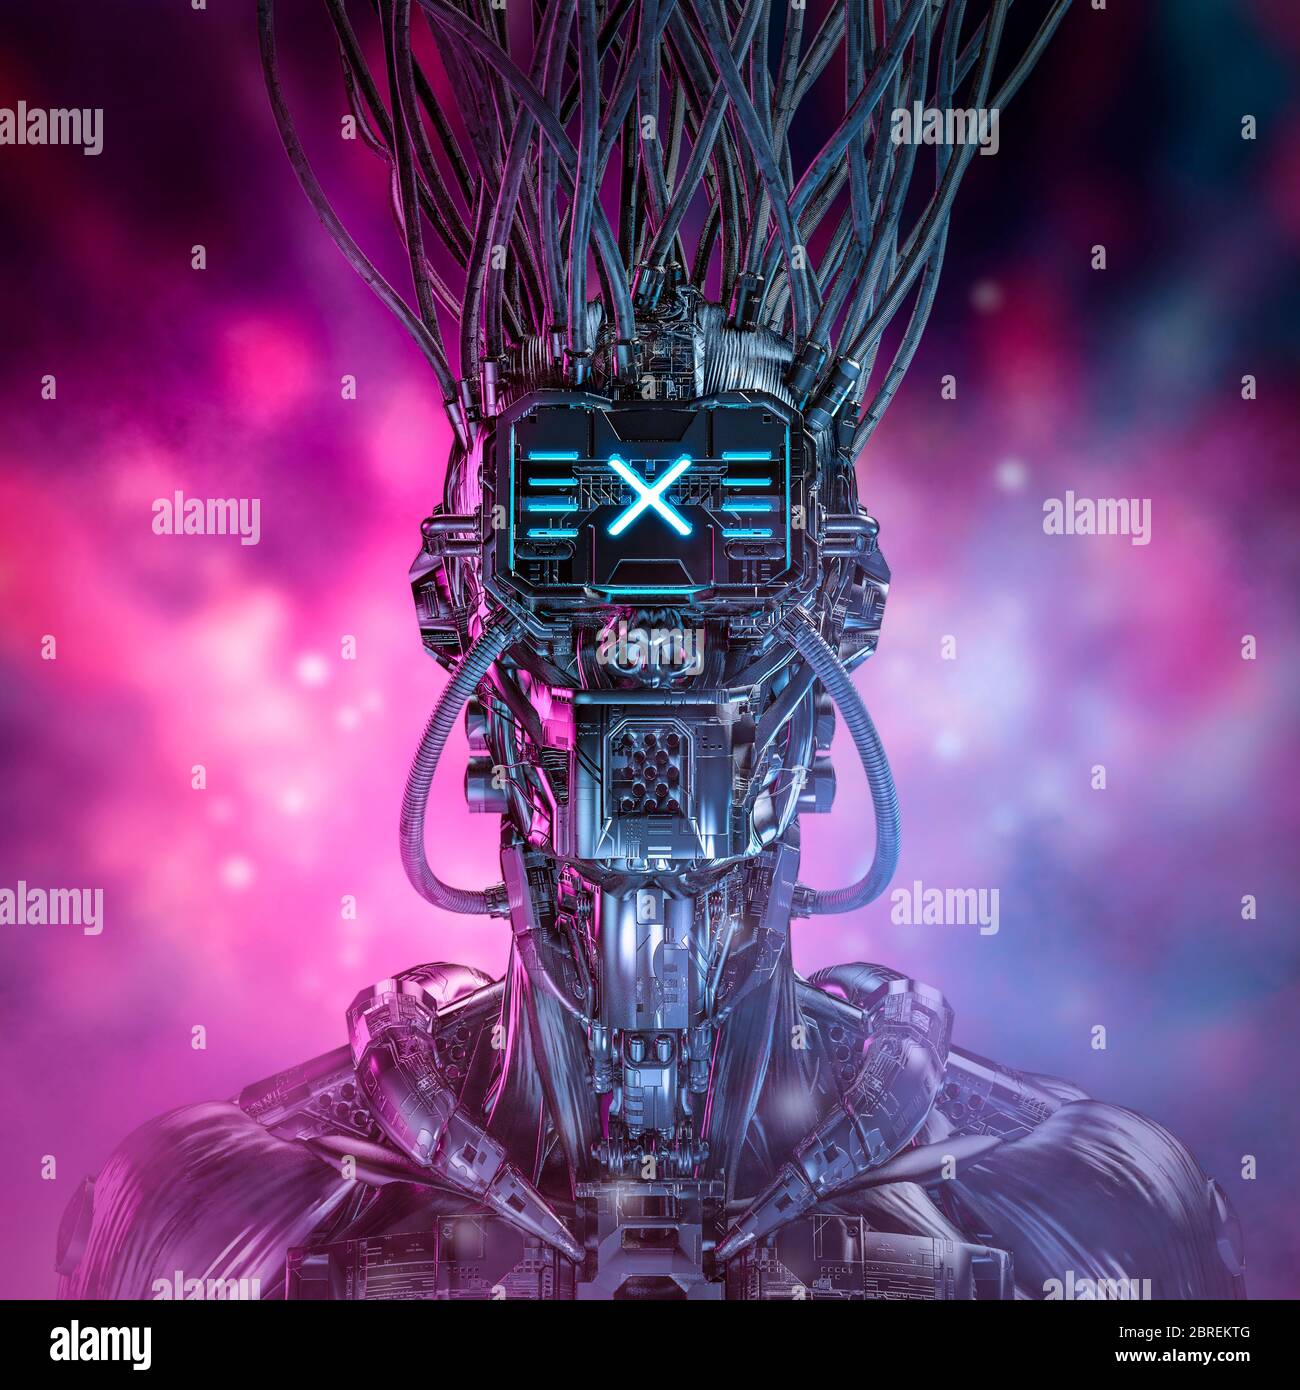 Portrait de gamer cyberpunk / illustration 3D du personnage de robot  futuriste de science-fiction avec fond bokeh lumineux Photo Stock - Alamy